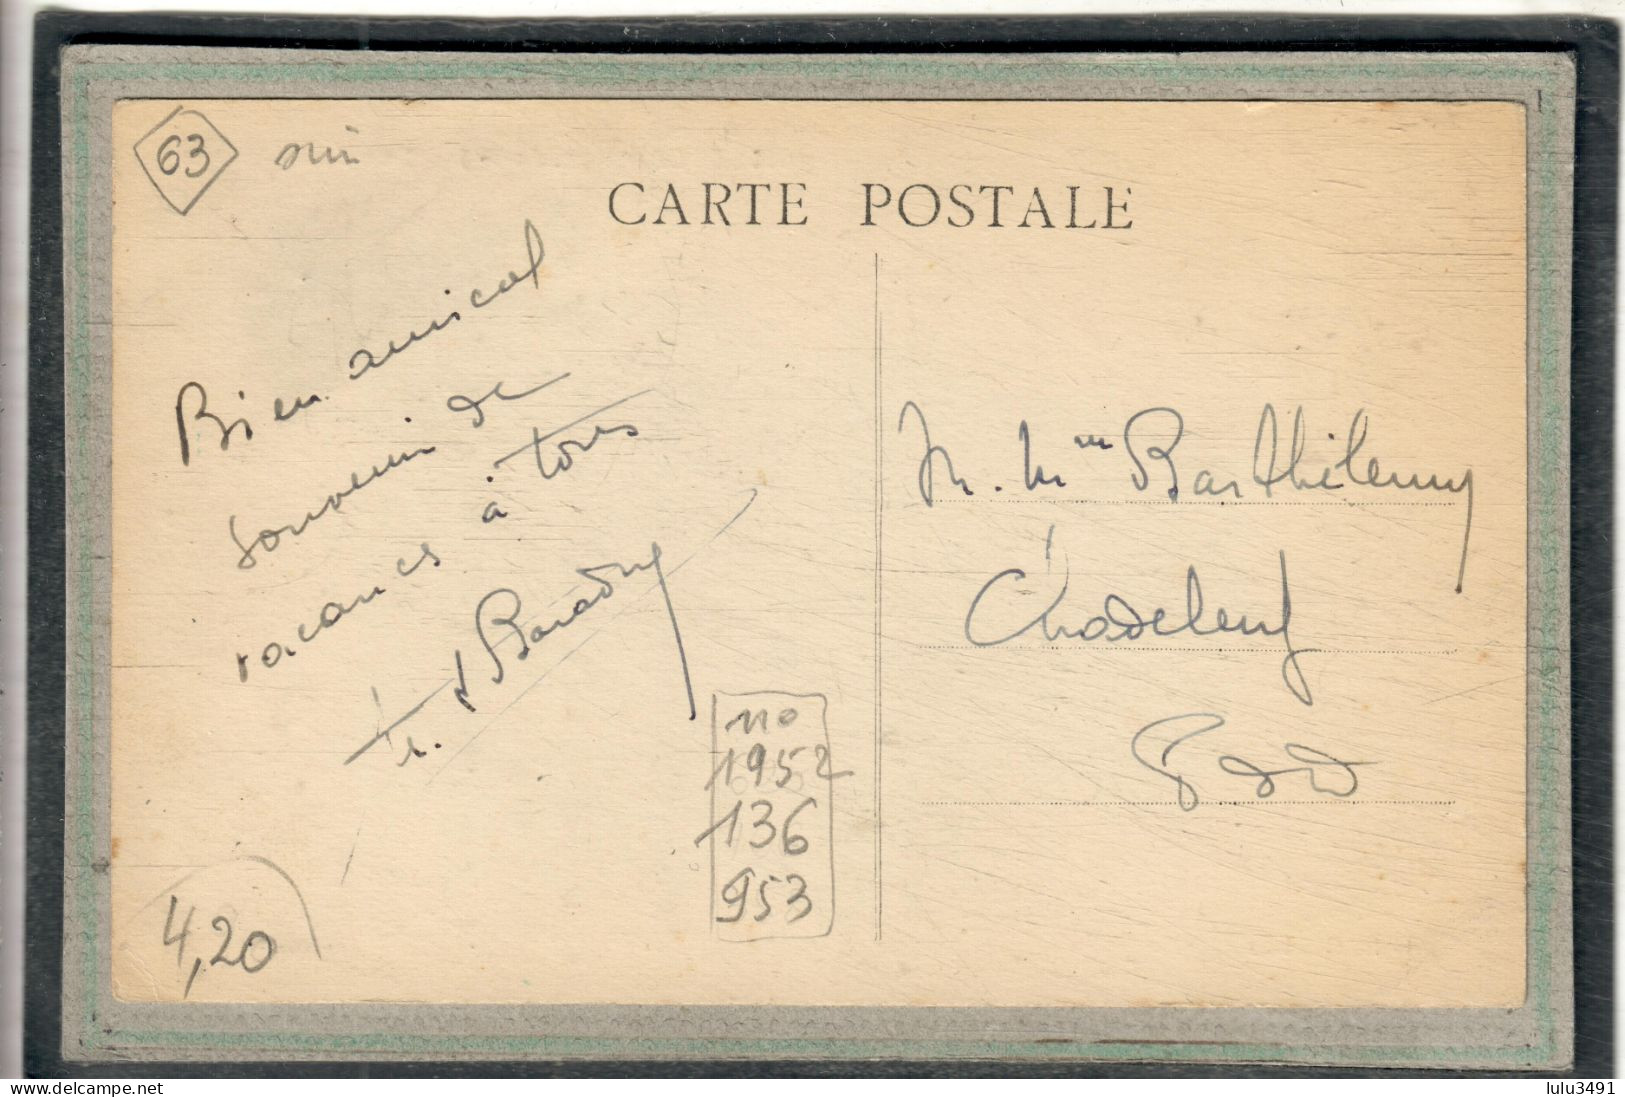 CPA - CHATELDON (63) - Aspect De La Place En 1915 - Chateldon